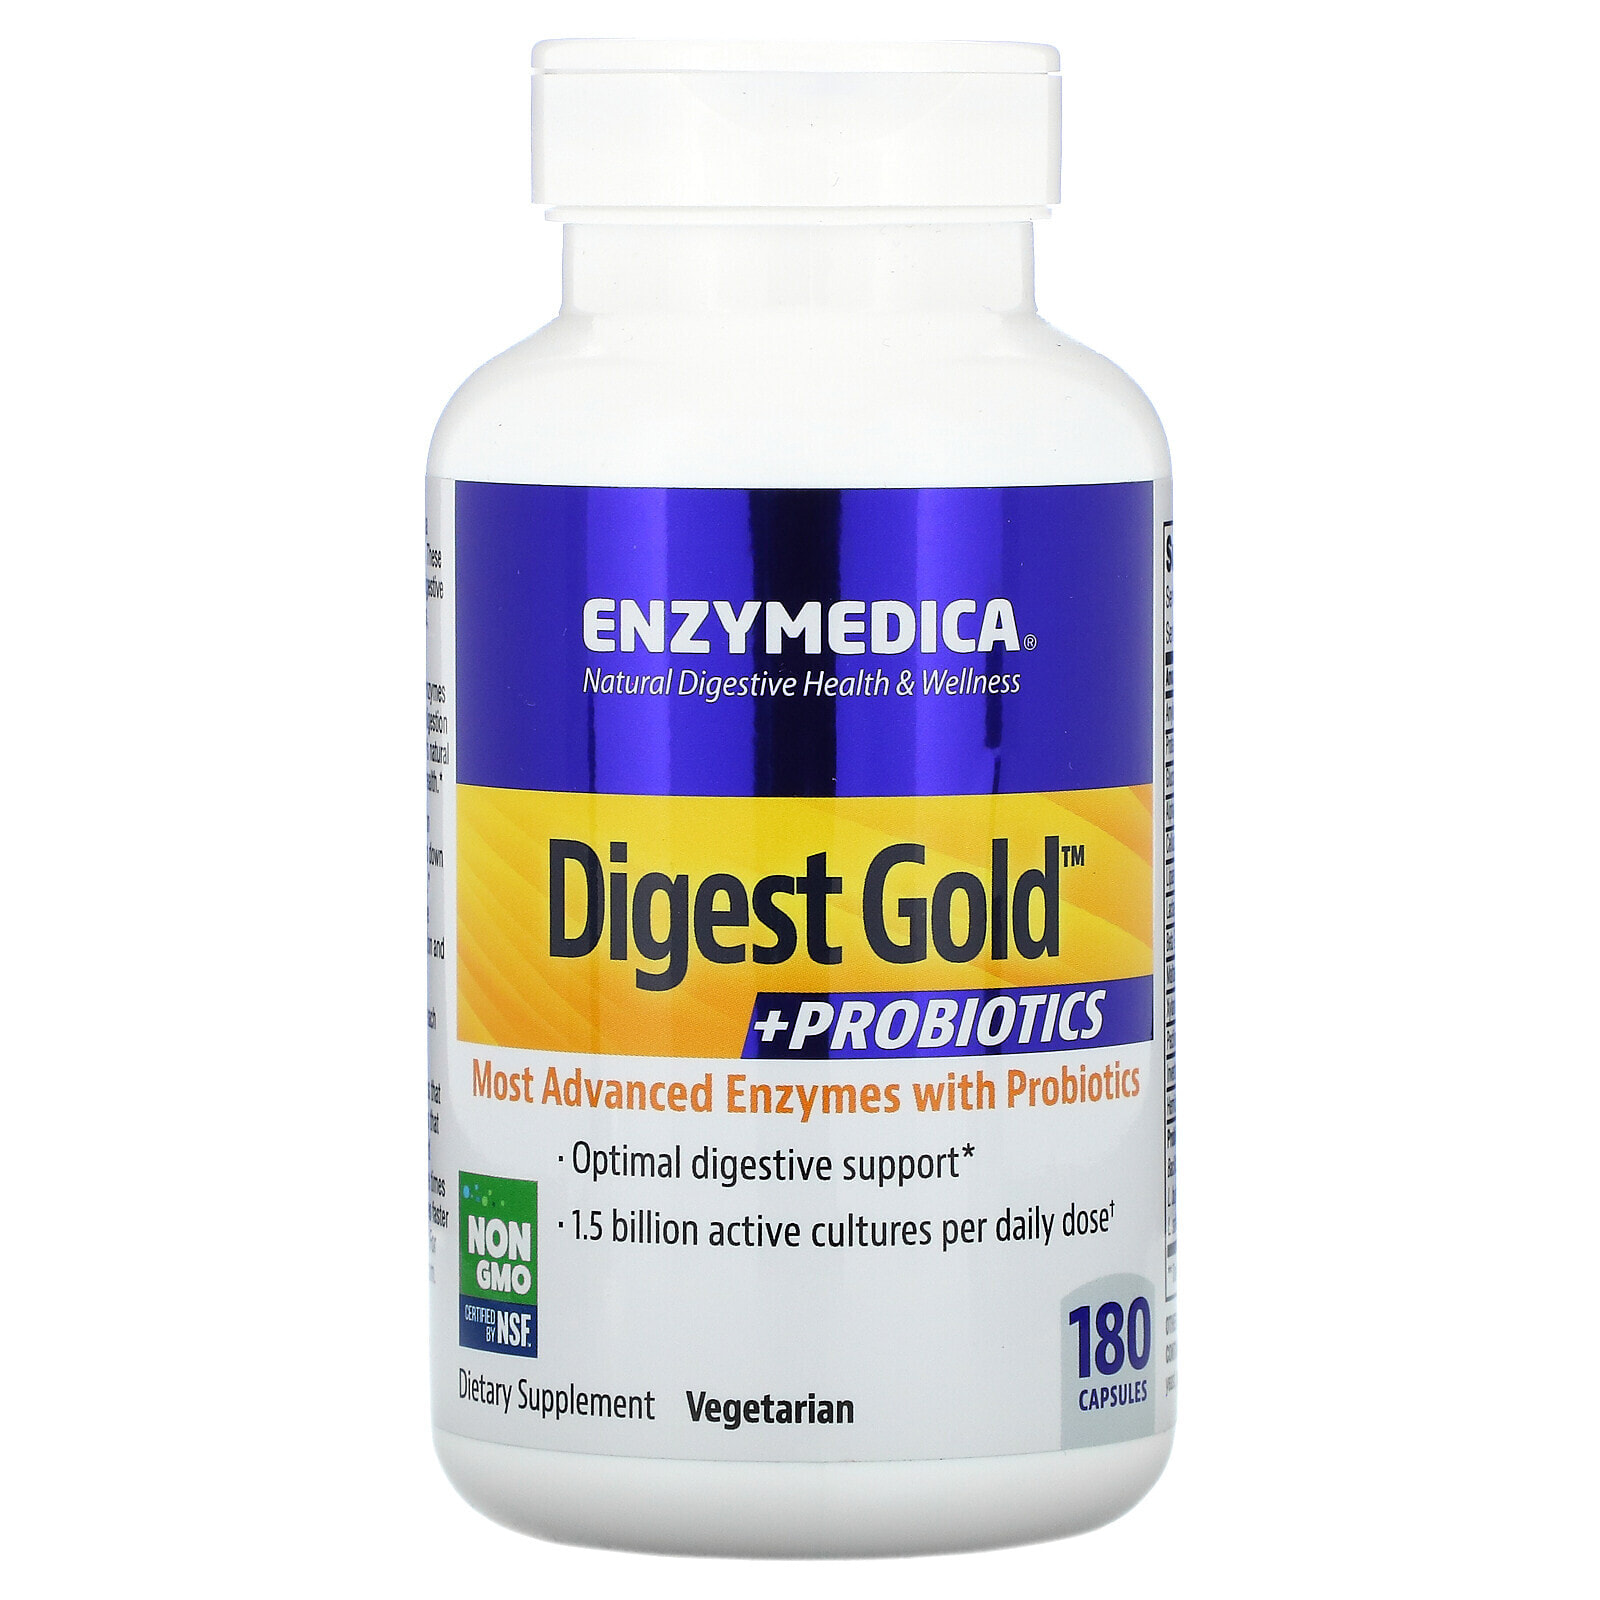 Enzymedica Digest 90 капсул. Enzymedica Digest 180 капсул. Enzymedica-Digest-probiotics-90-Capsules. Enzymedica Digest Gold. Энзимедика ферменты